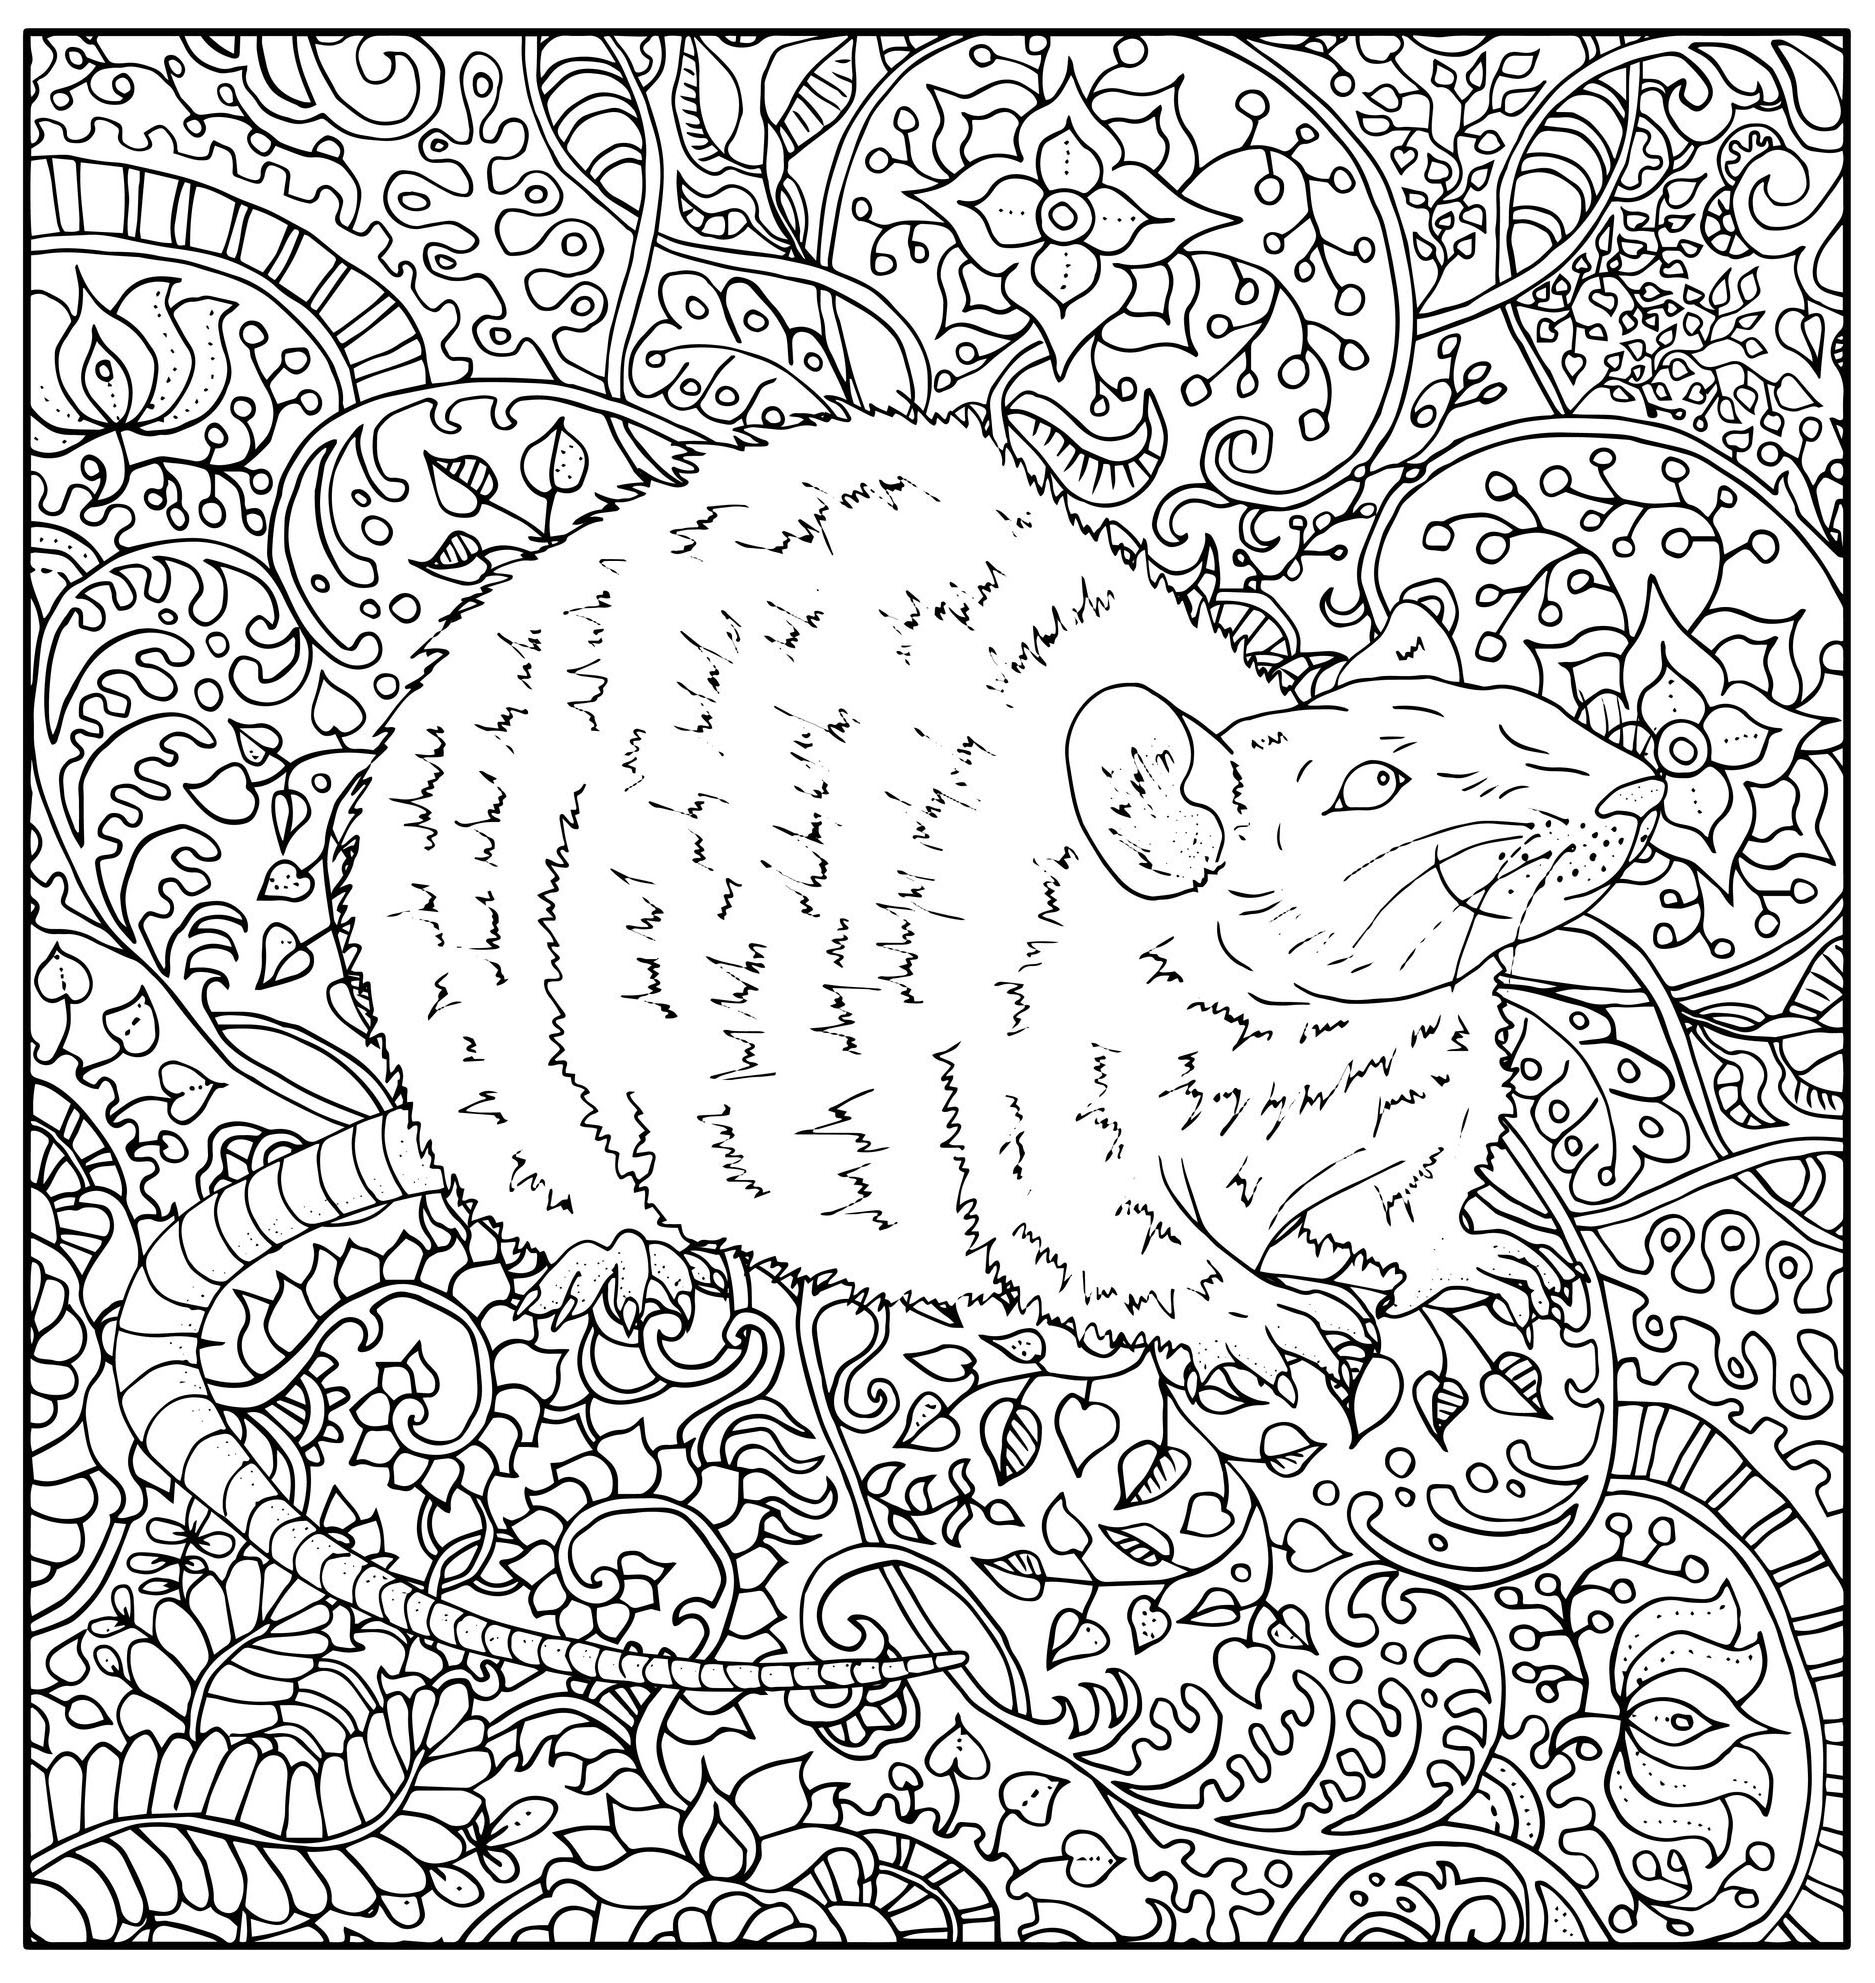 Dessin très réaliste d'un rat avec différentes plantes abstraites en fond, Source : 123rf   Artiste : Vera Petruk